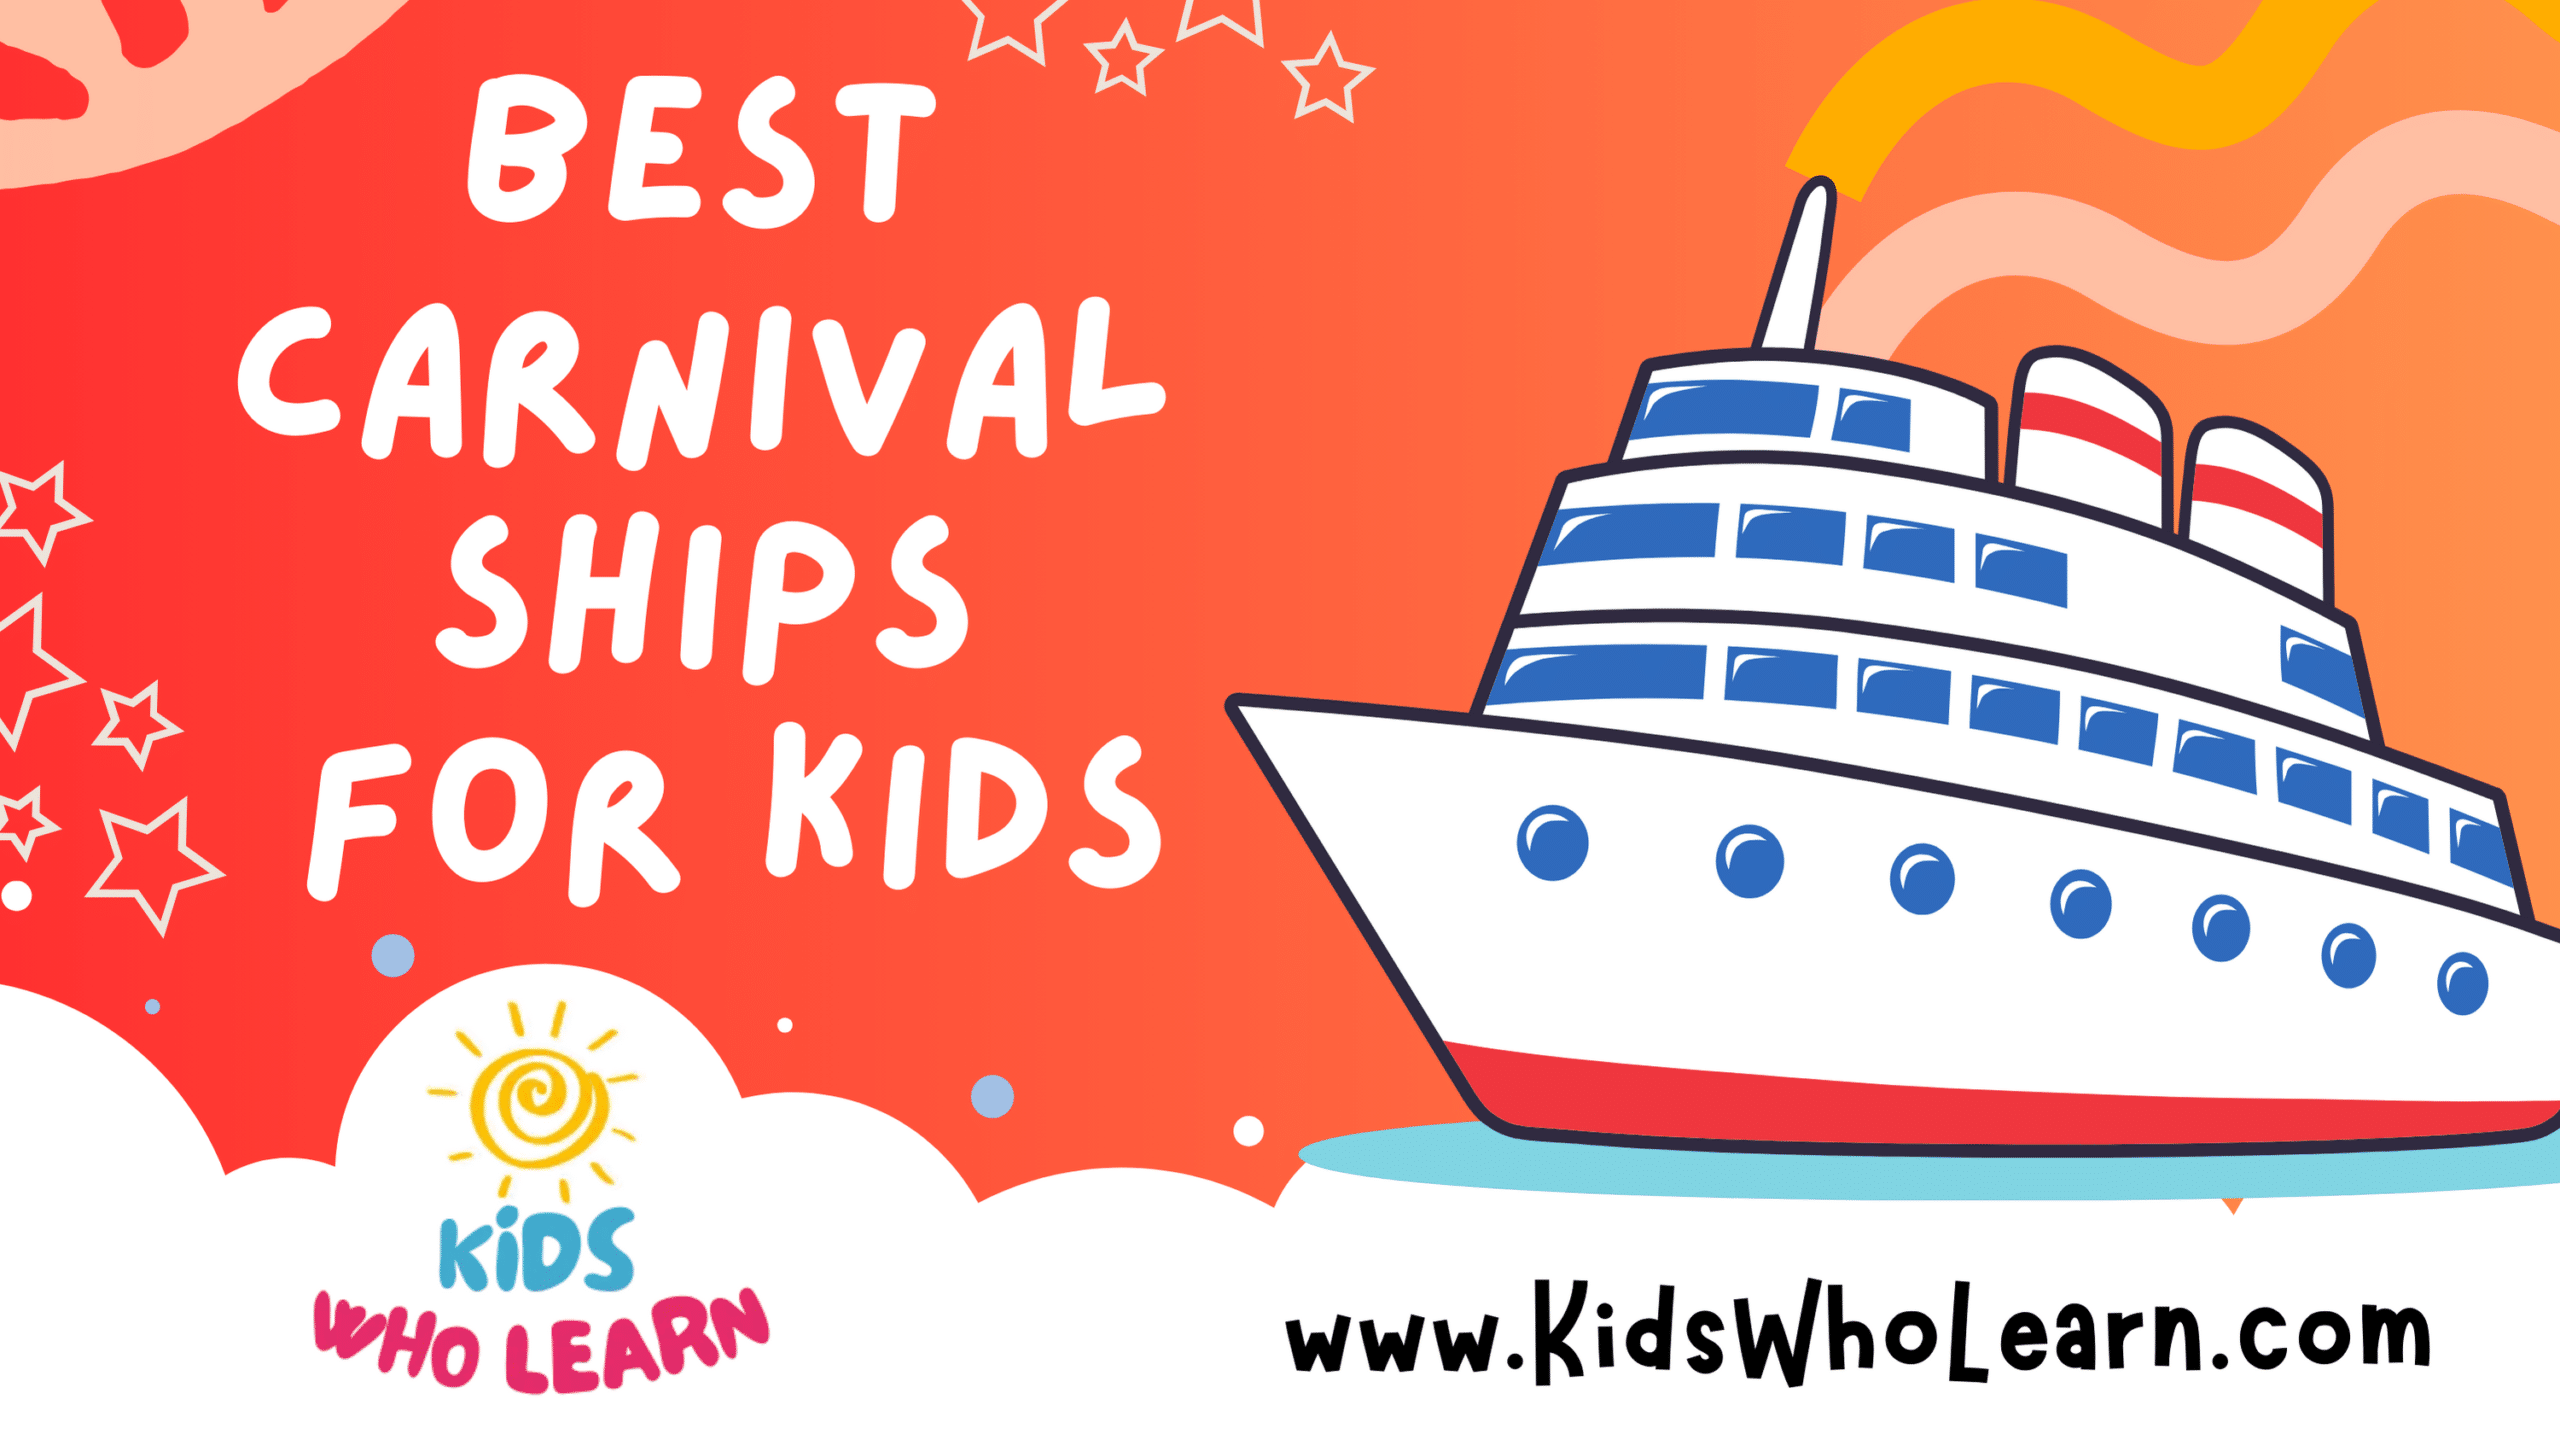 Best Carnival Ships For Kids